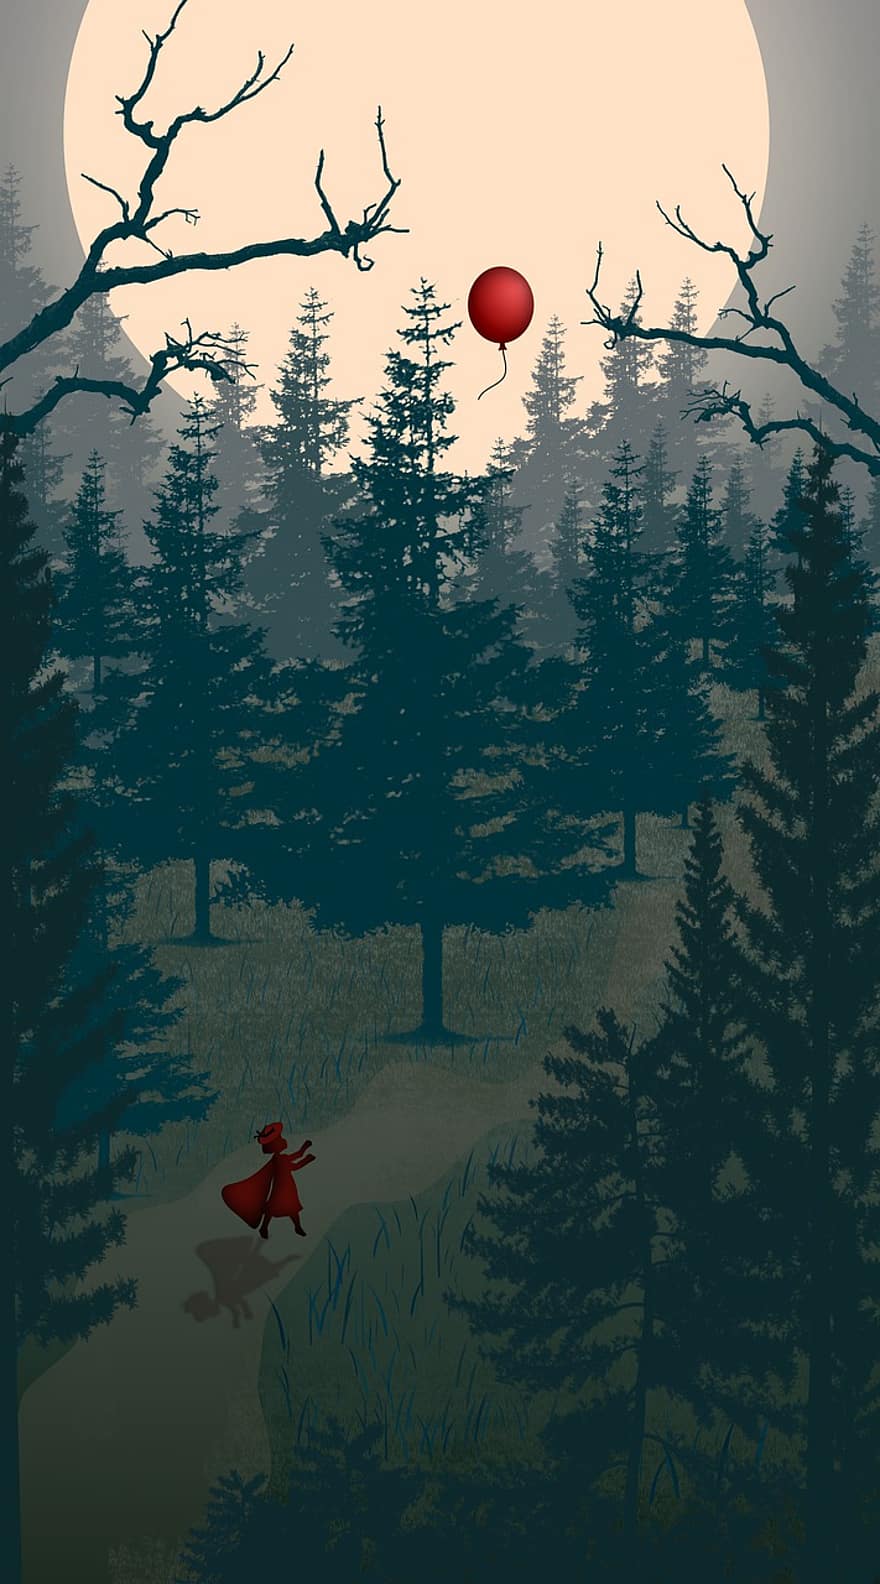 le petit Chaperon rouge, forêt Noire, fantaisie, lune, des arbres, ballon rouge, la nature, perdu, seul, nuit, dessin animé